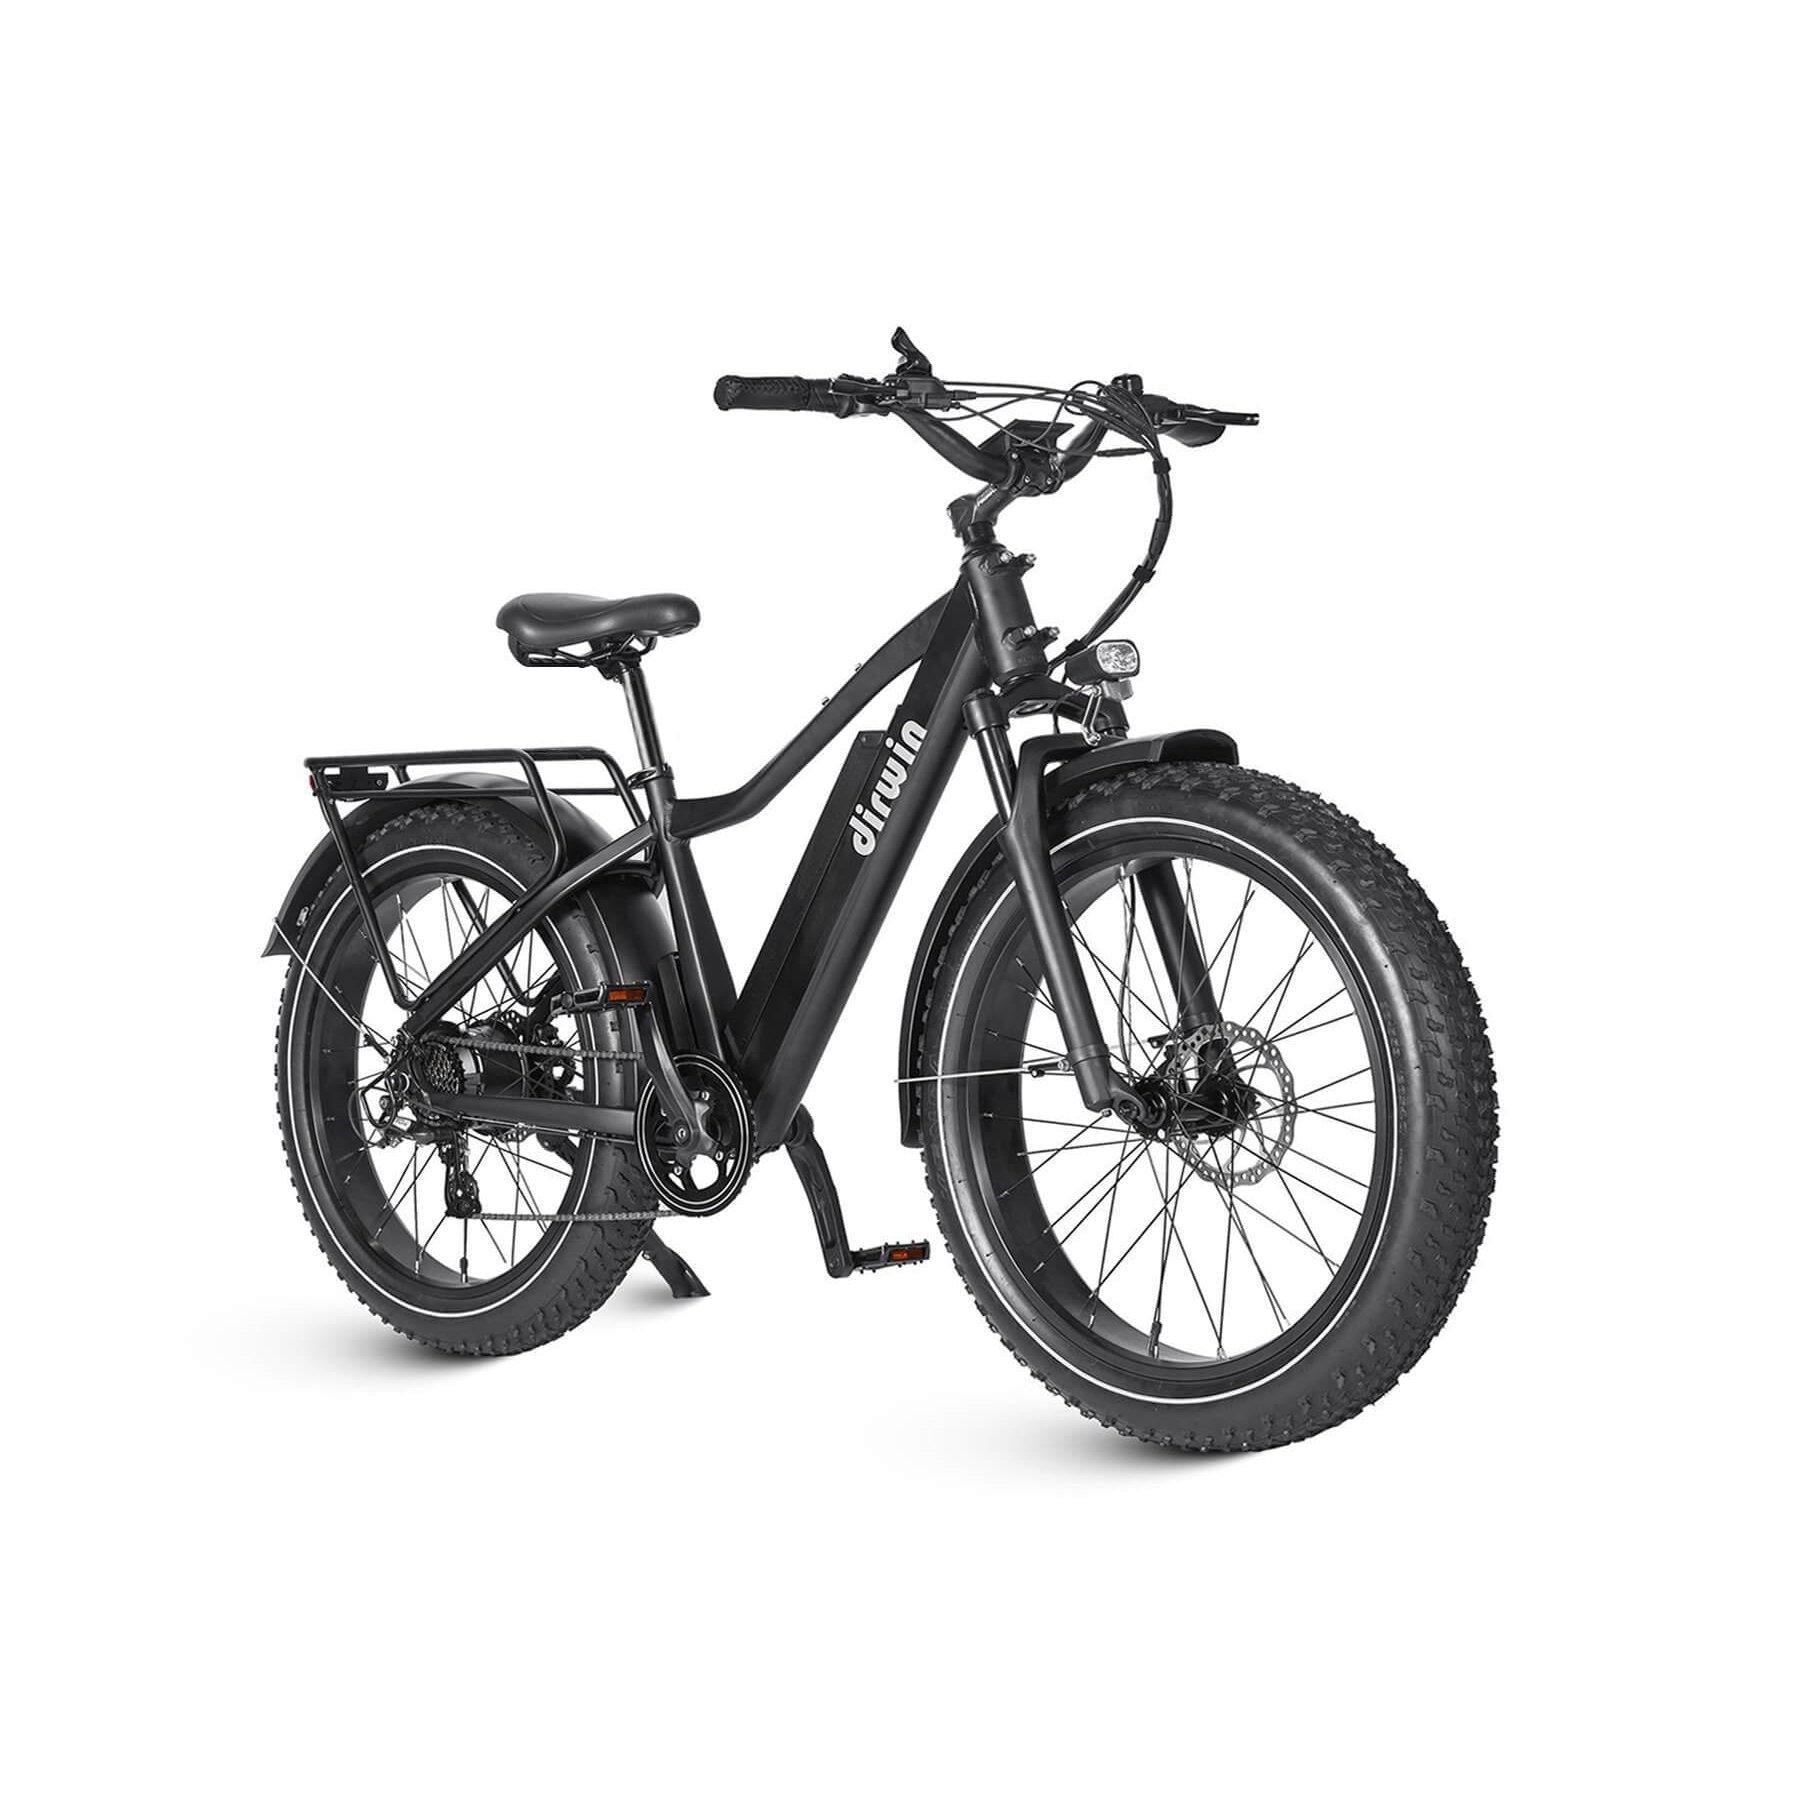 Dirwin Seeker 750W Fat Tire Electric Bike w/ Twist Throttle